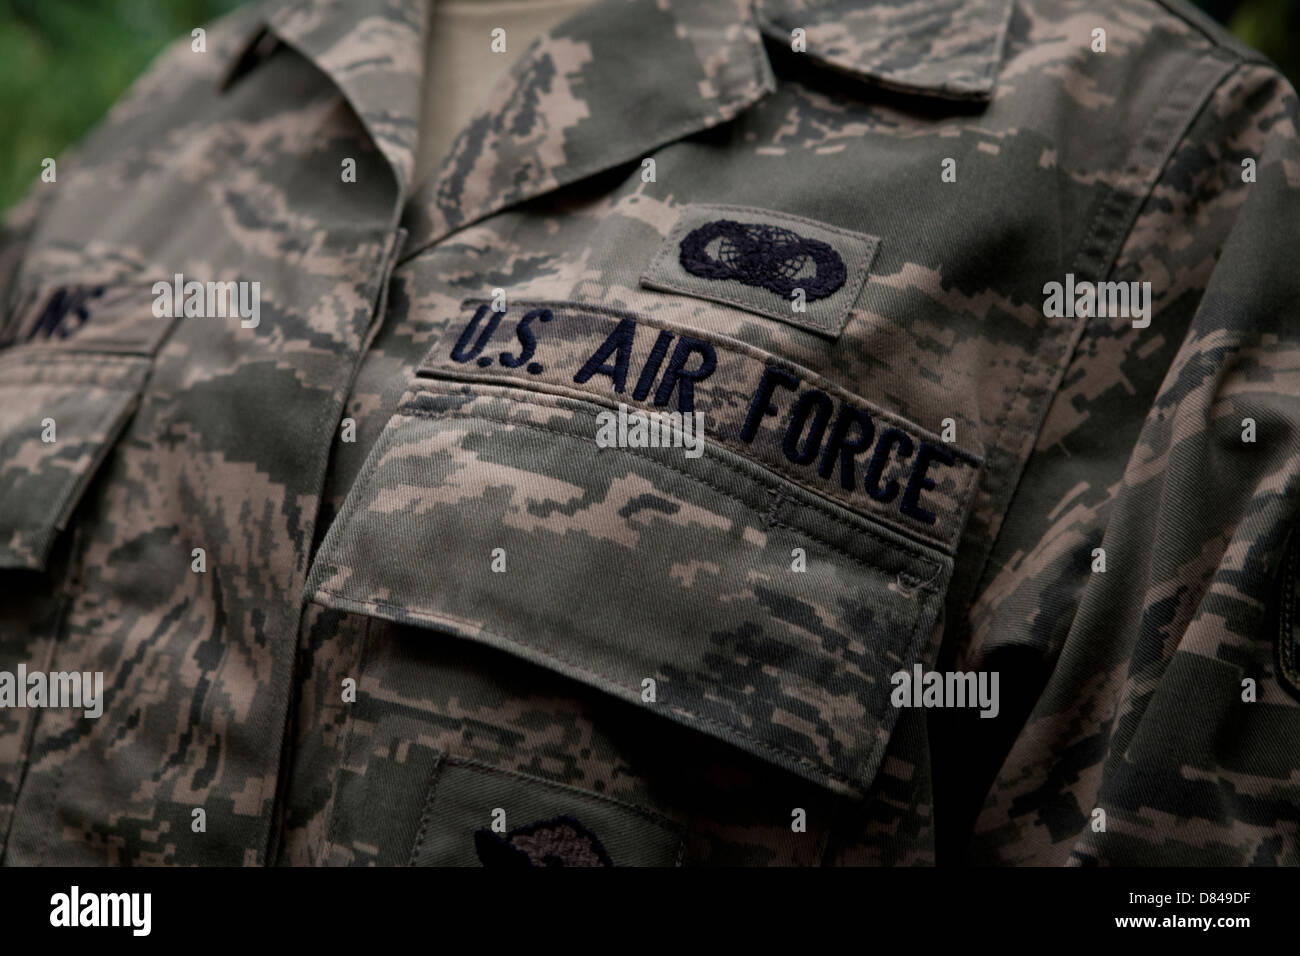 US Air Force airman battle uniform Foto Stock